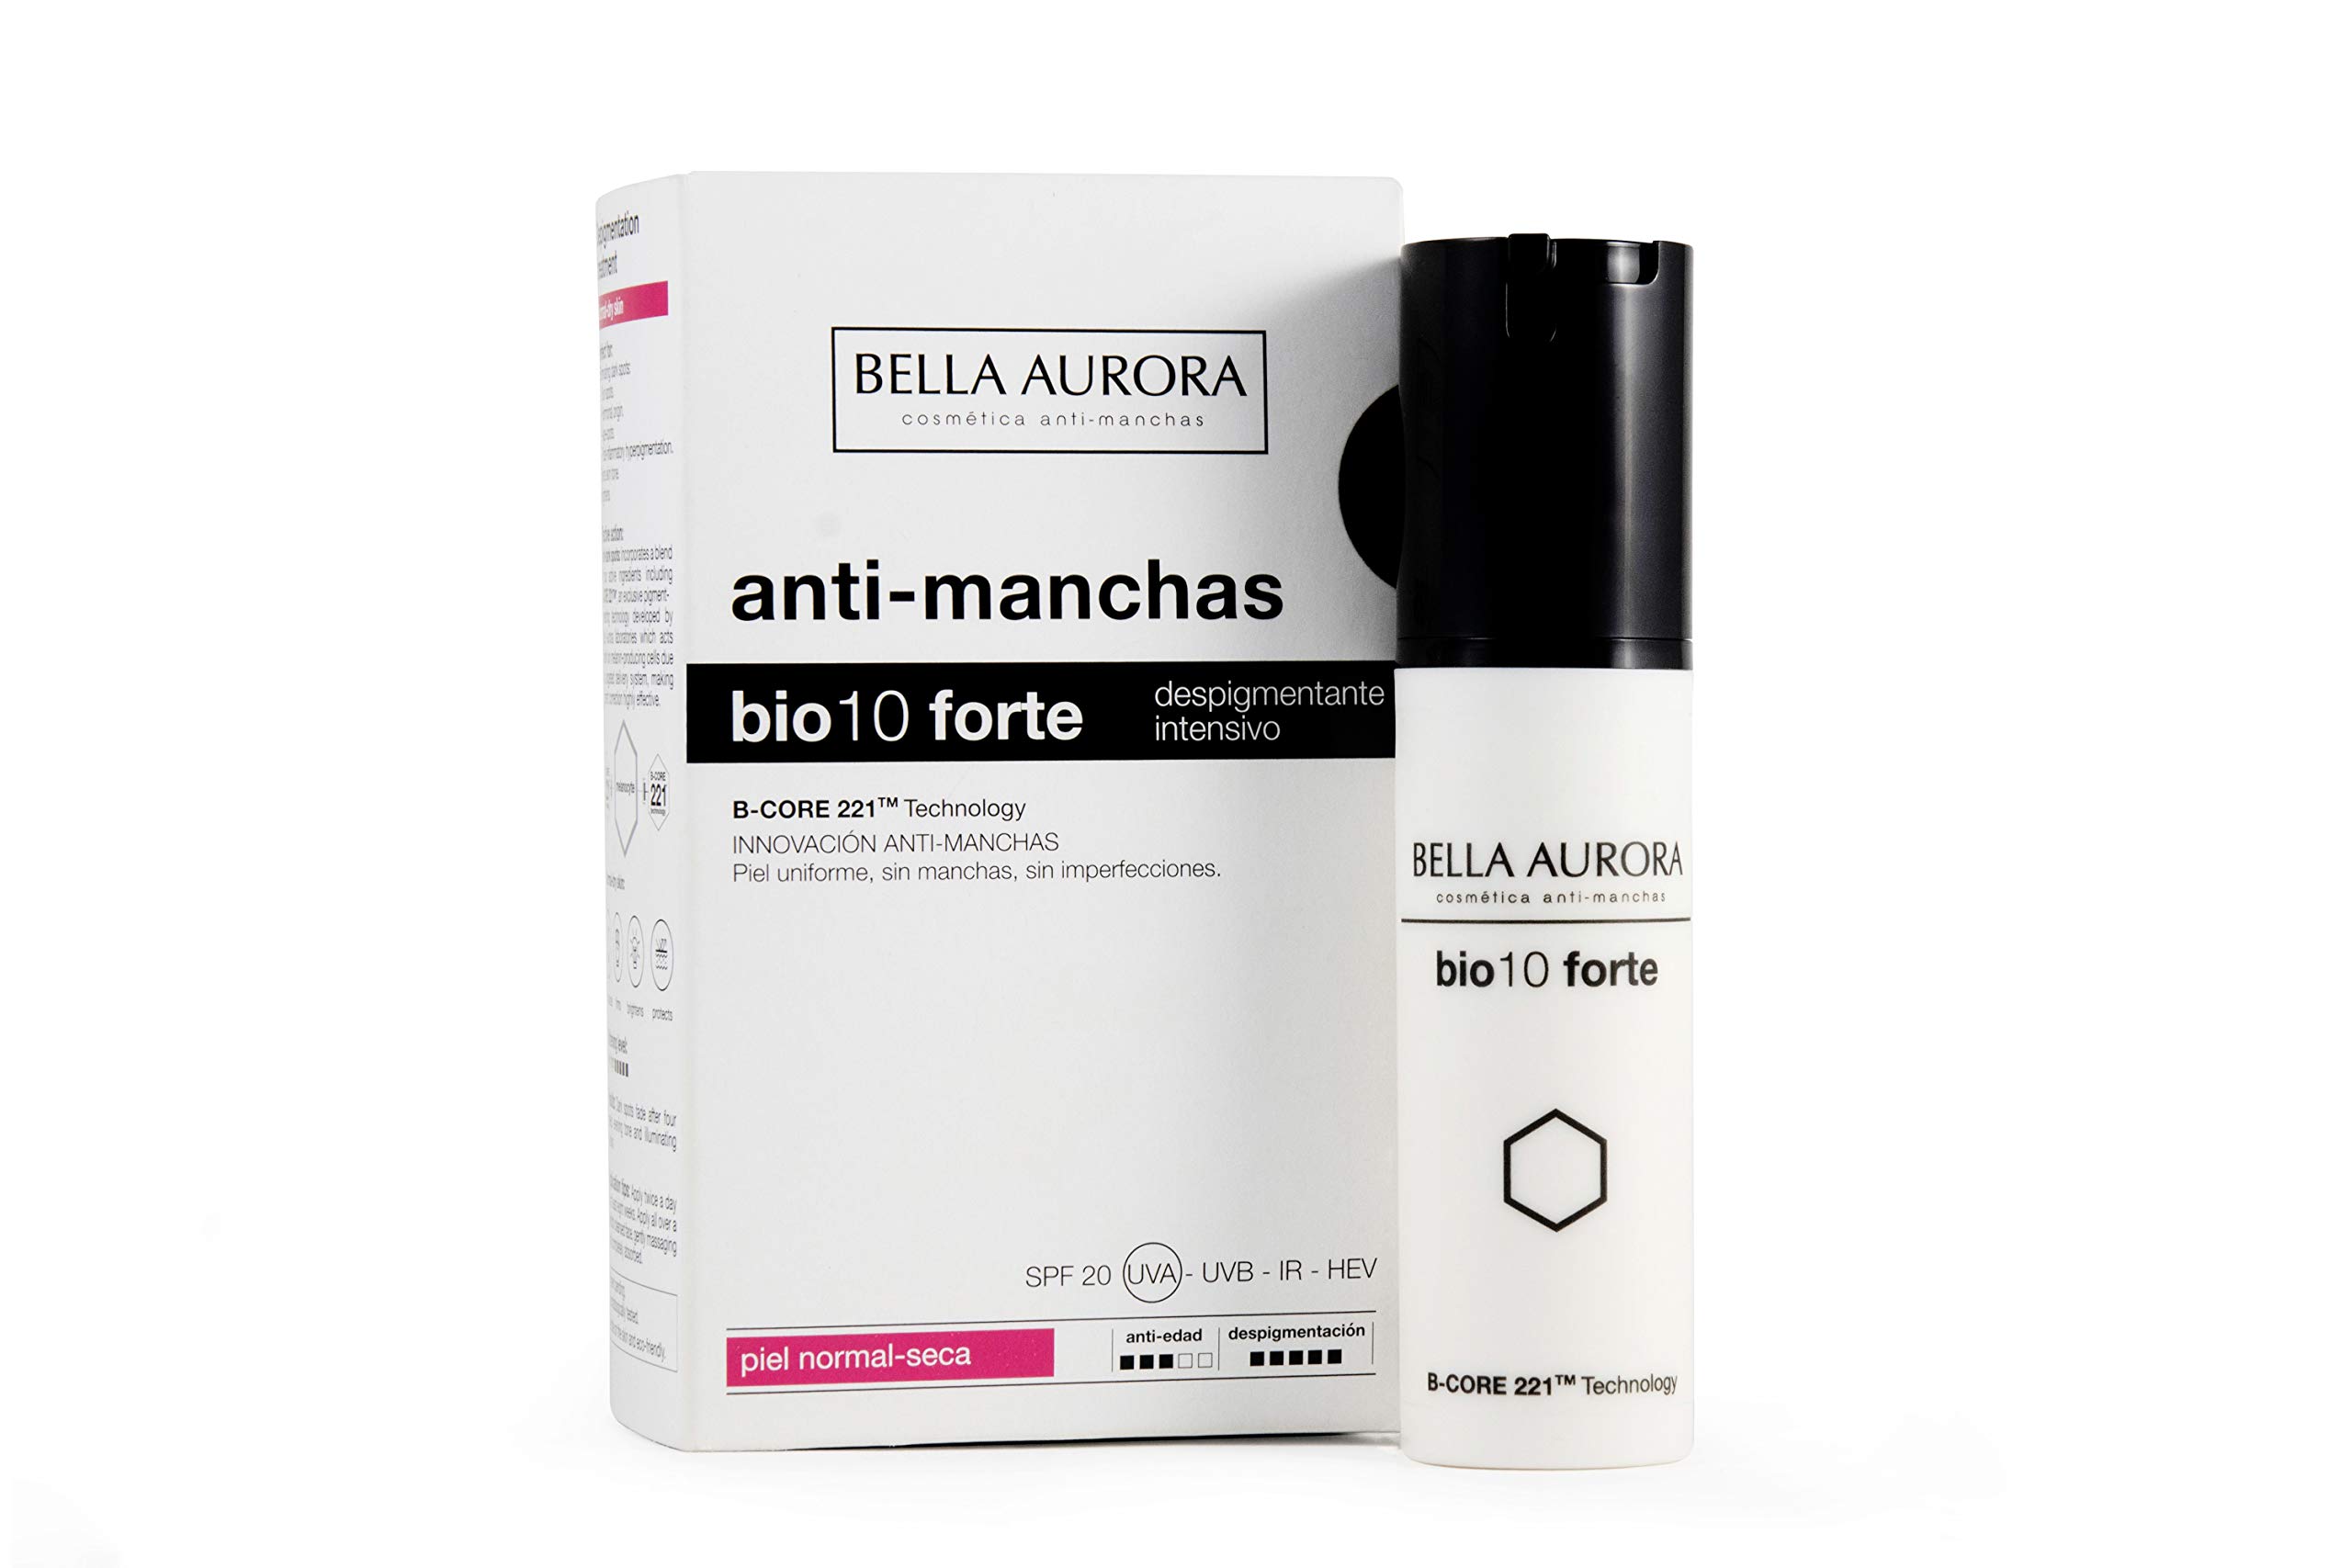 BELLA AURORA Aufhellungs Creme für Normale und Trockene Haut, Intensive Pigment und Altersflecken, bio10 forte, 30 ml